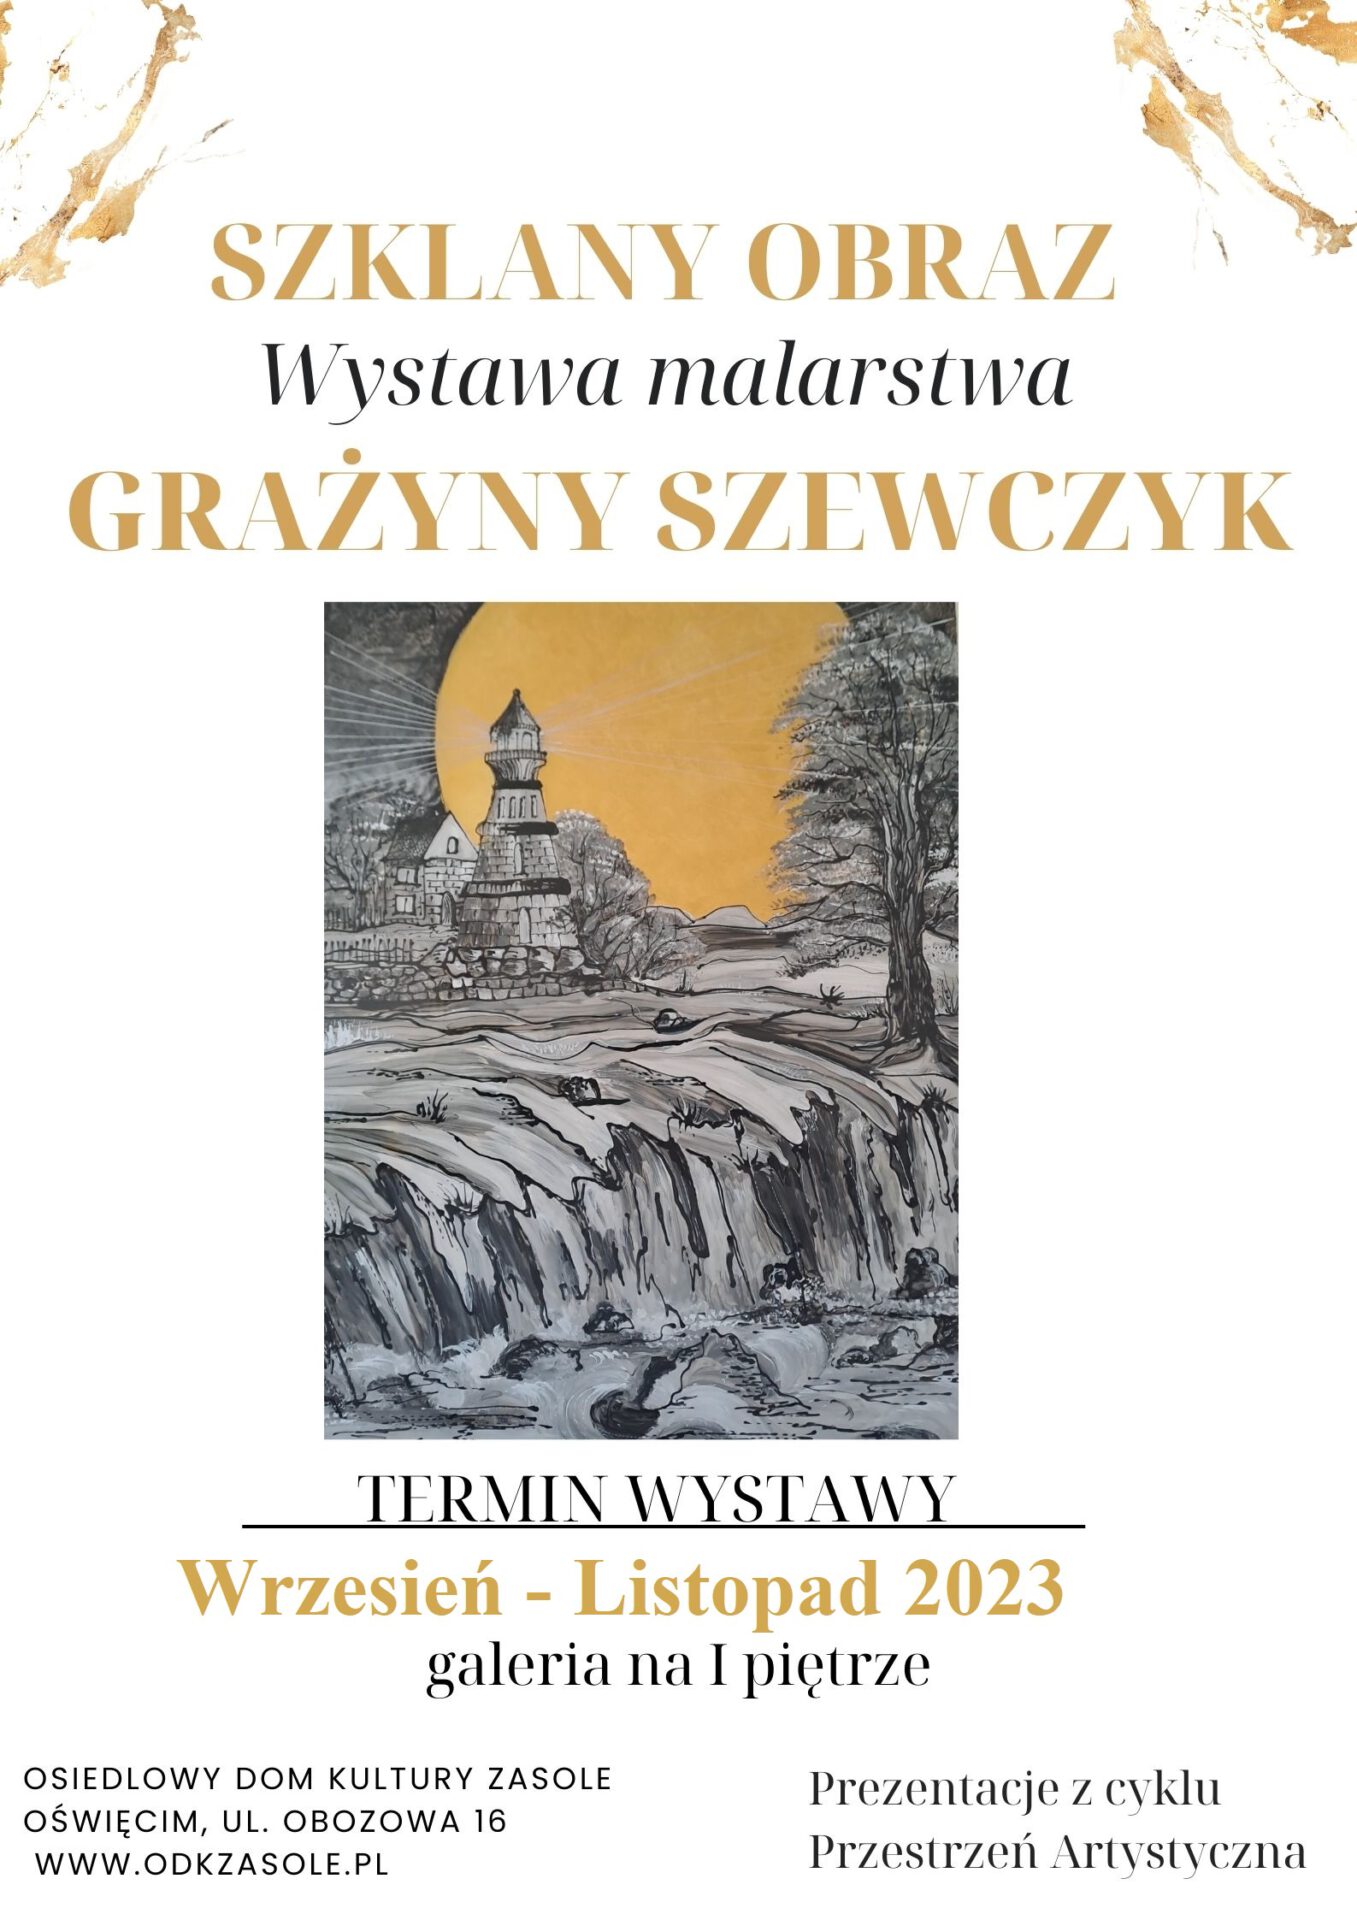 Plakat przedstawiajacy jedną z prac autorki wystawy Grażyny Szewczyk. 
Przedstawia budynek i zerway stromy brzeg skalny nad rzeką 